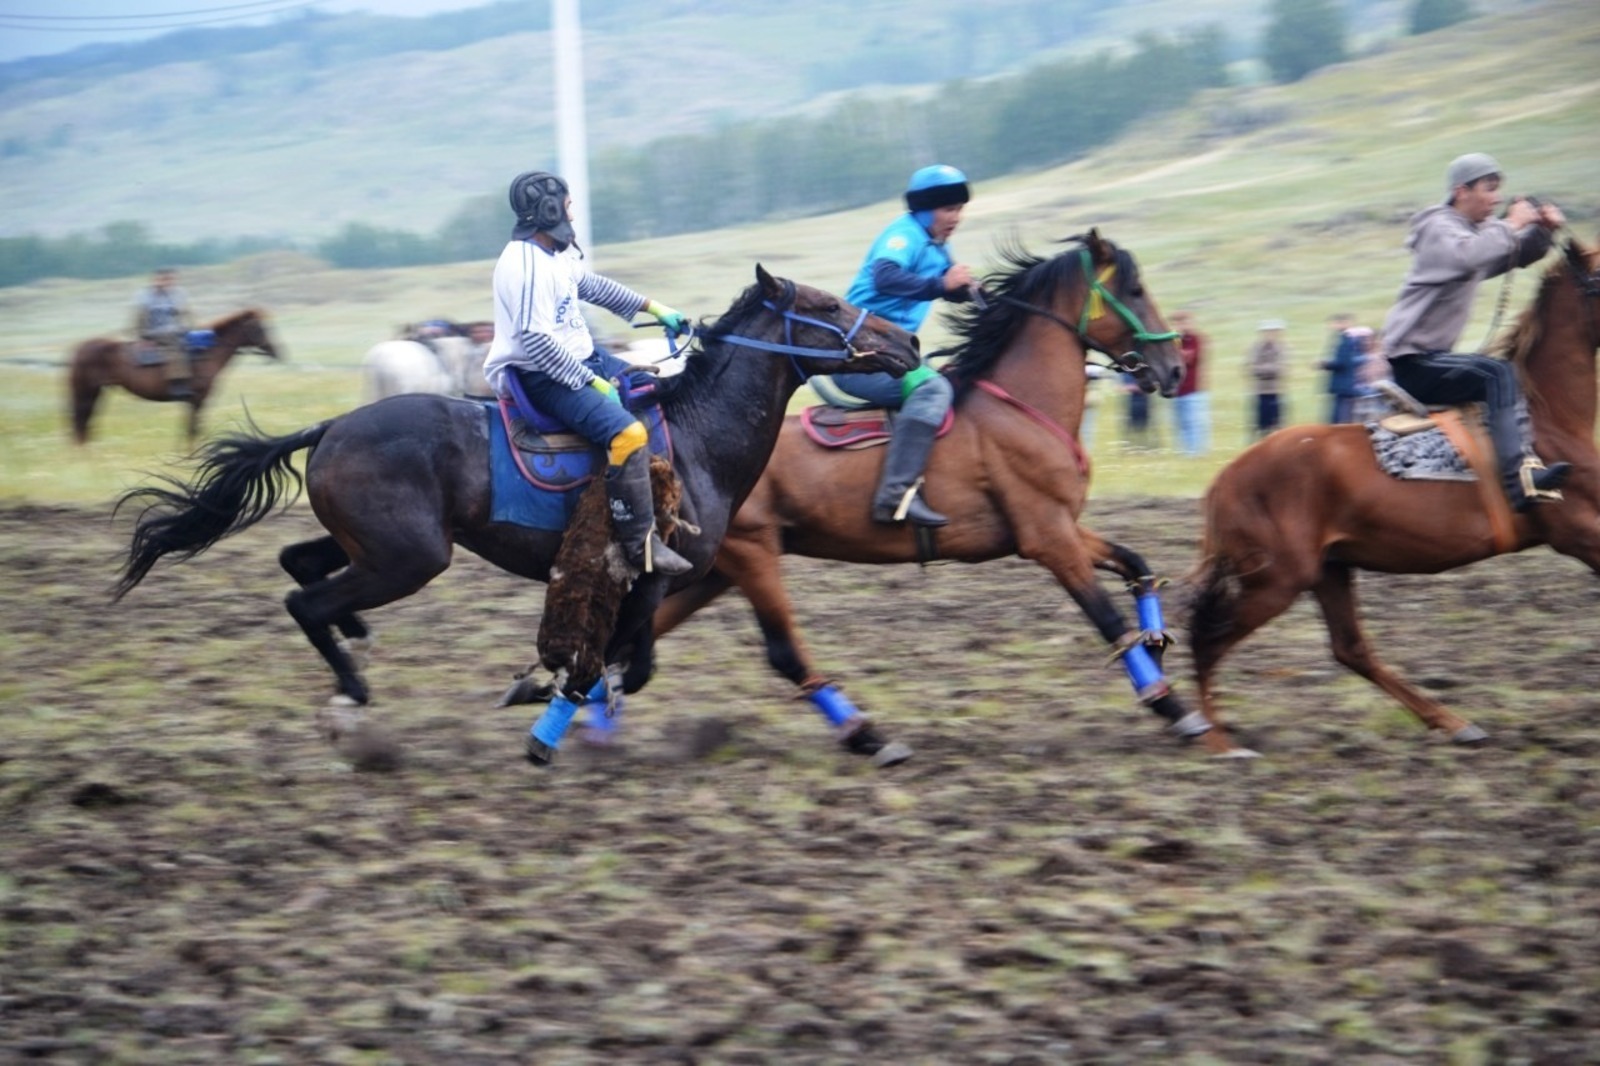 Фестиваль башкирской лошади начался с козлодрания